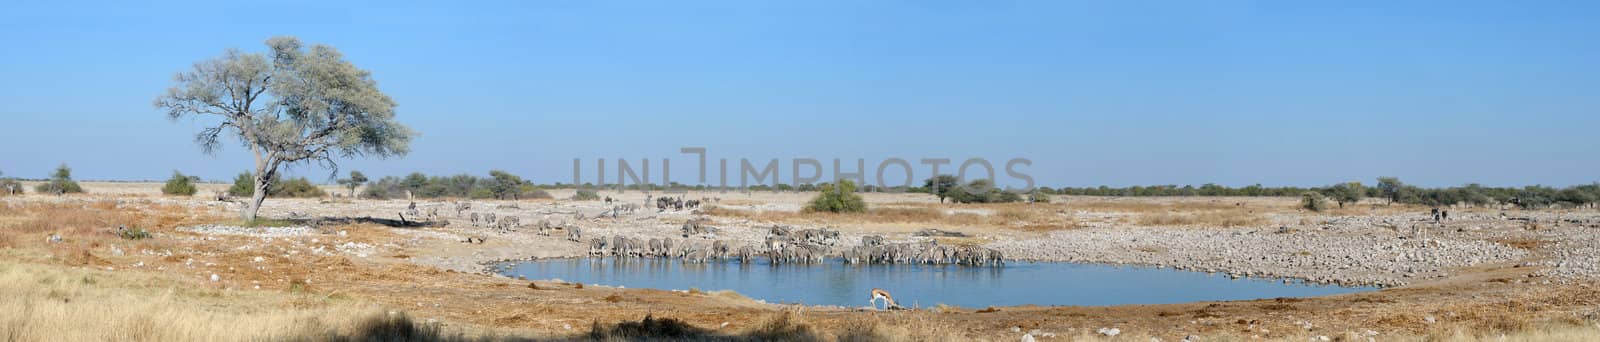 Okaukeujo waterhole panorama 3 by dpreezg